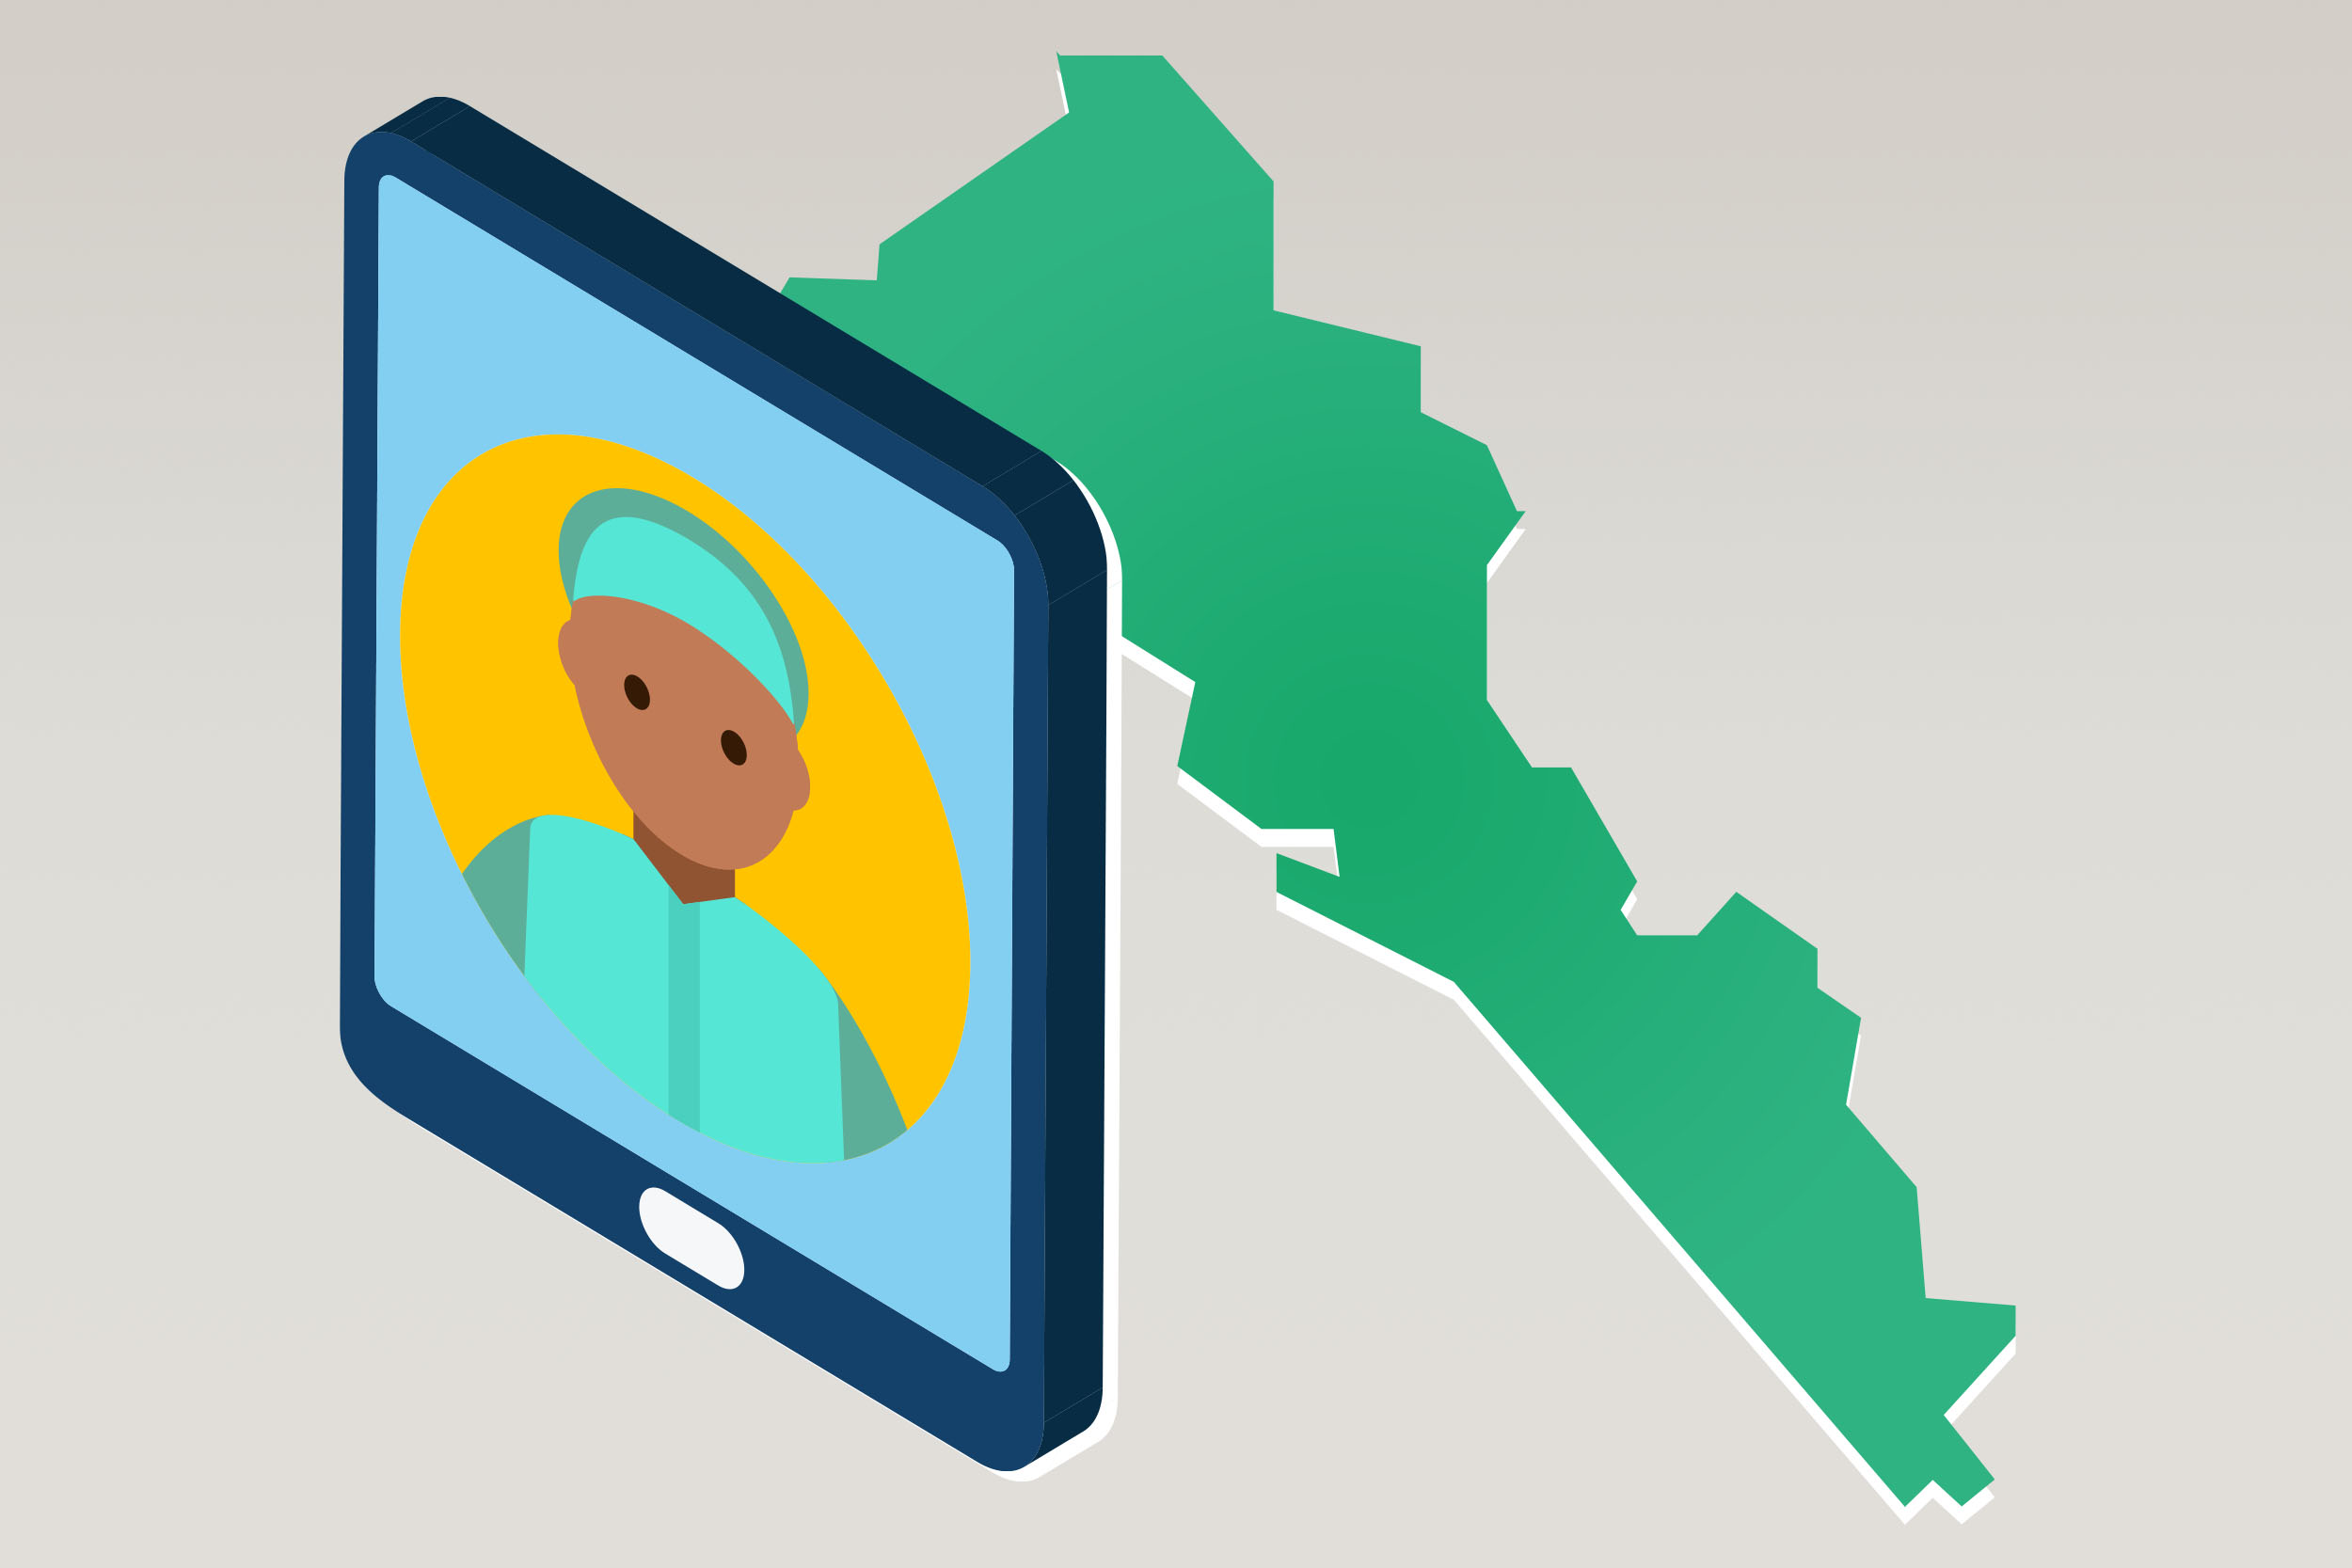 Mapa del estado de Sinaloa y un dispositivo celular con imagen doctor